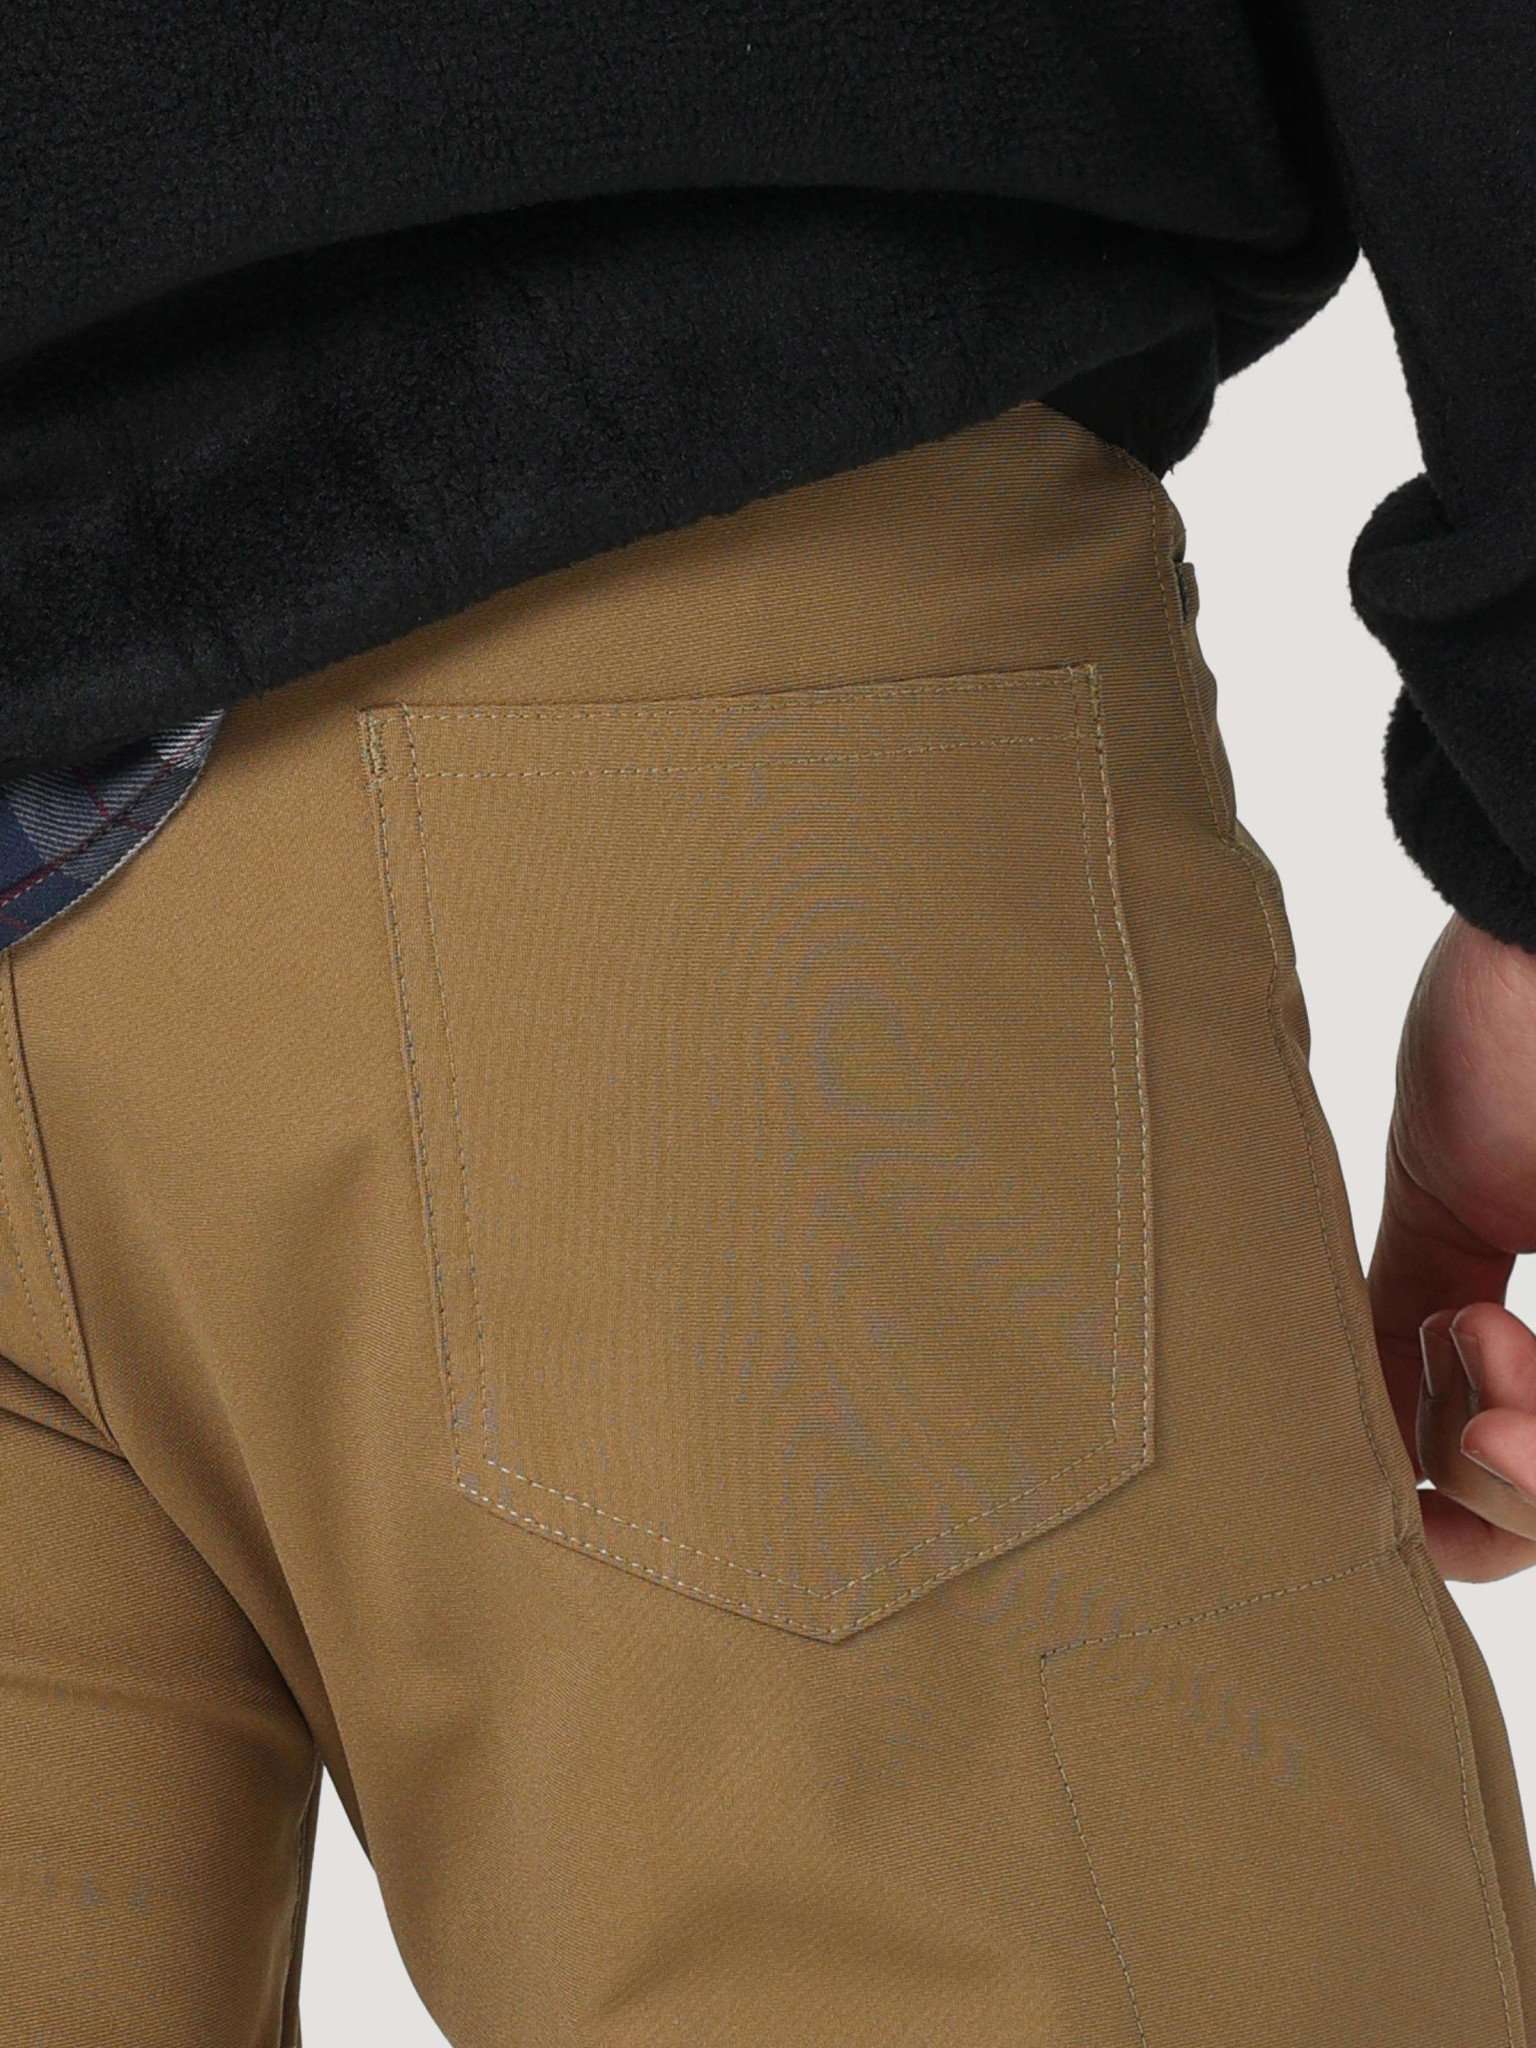 All Terrain Gear FWDS 5 Pocket Pants in Kangaroo Hosen Wrangler   